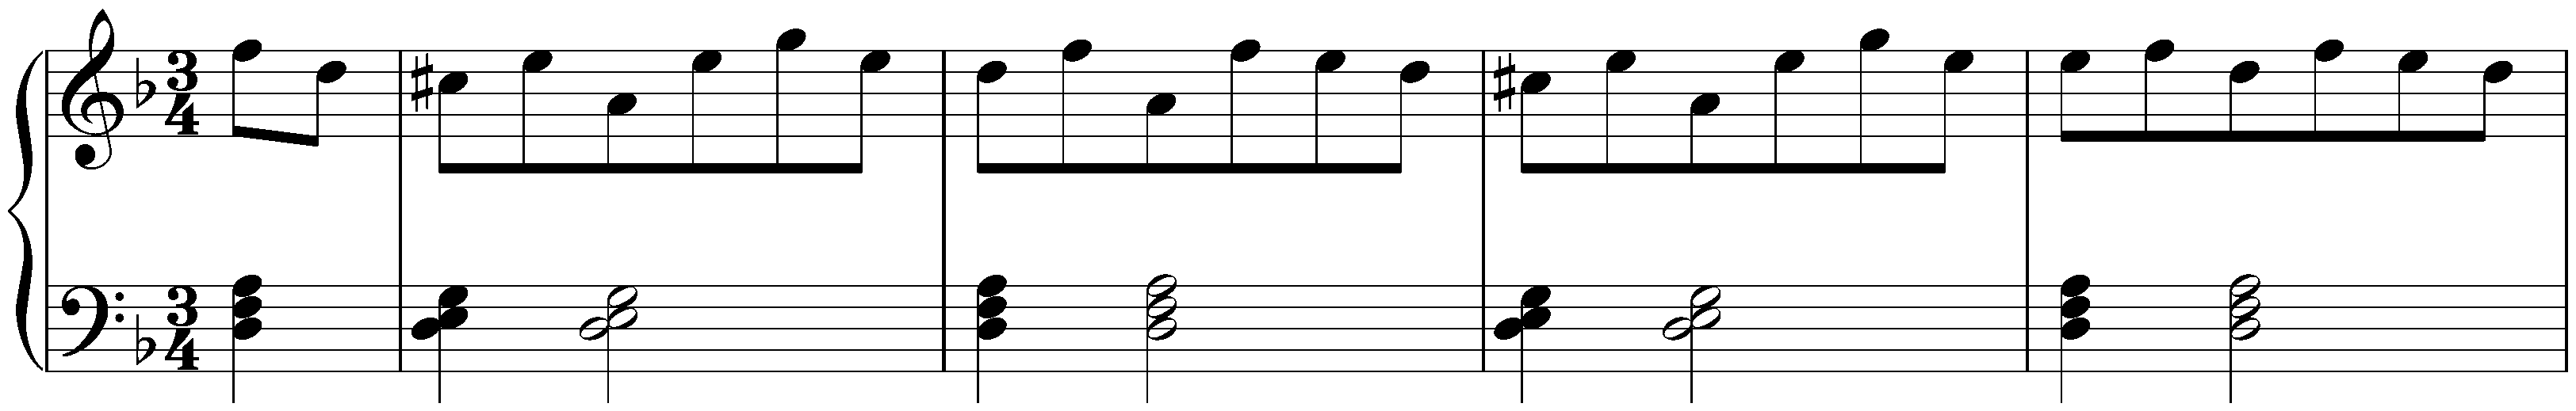 Six ländlerische Tänze, WoO 15; 4. D minor